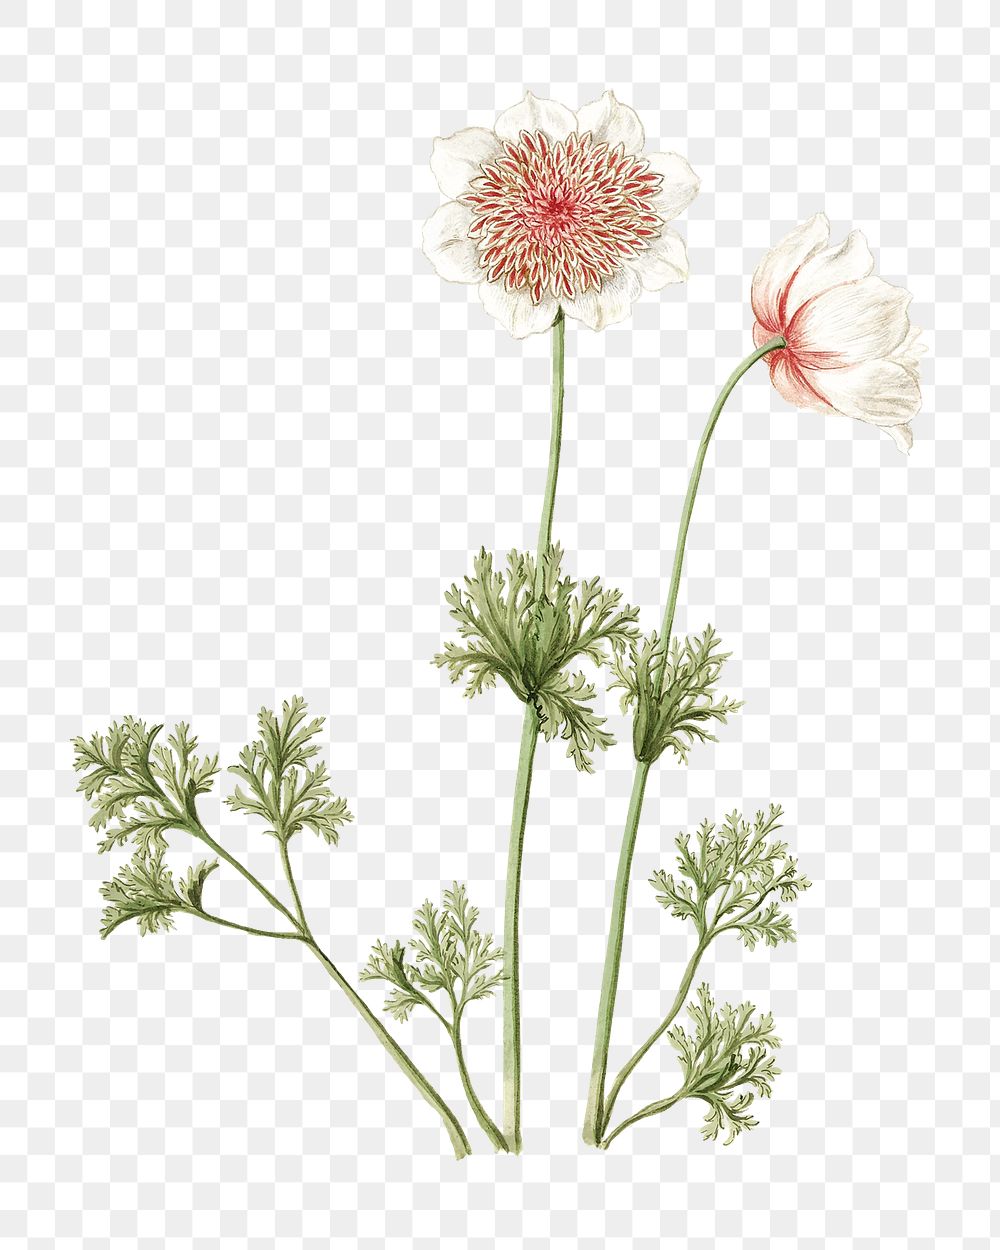 Anemones png vintage illustration, botanical design on transparent background